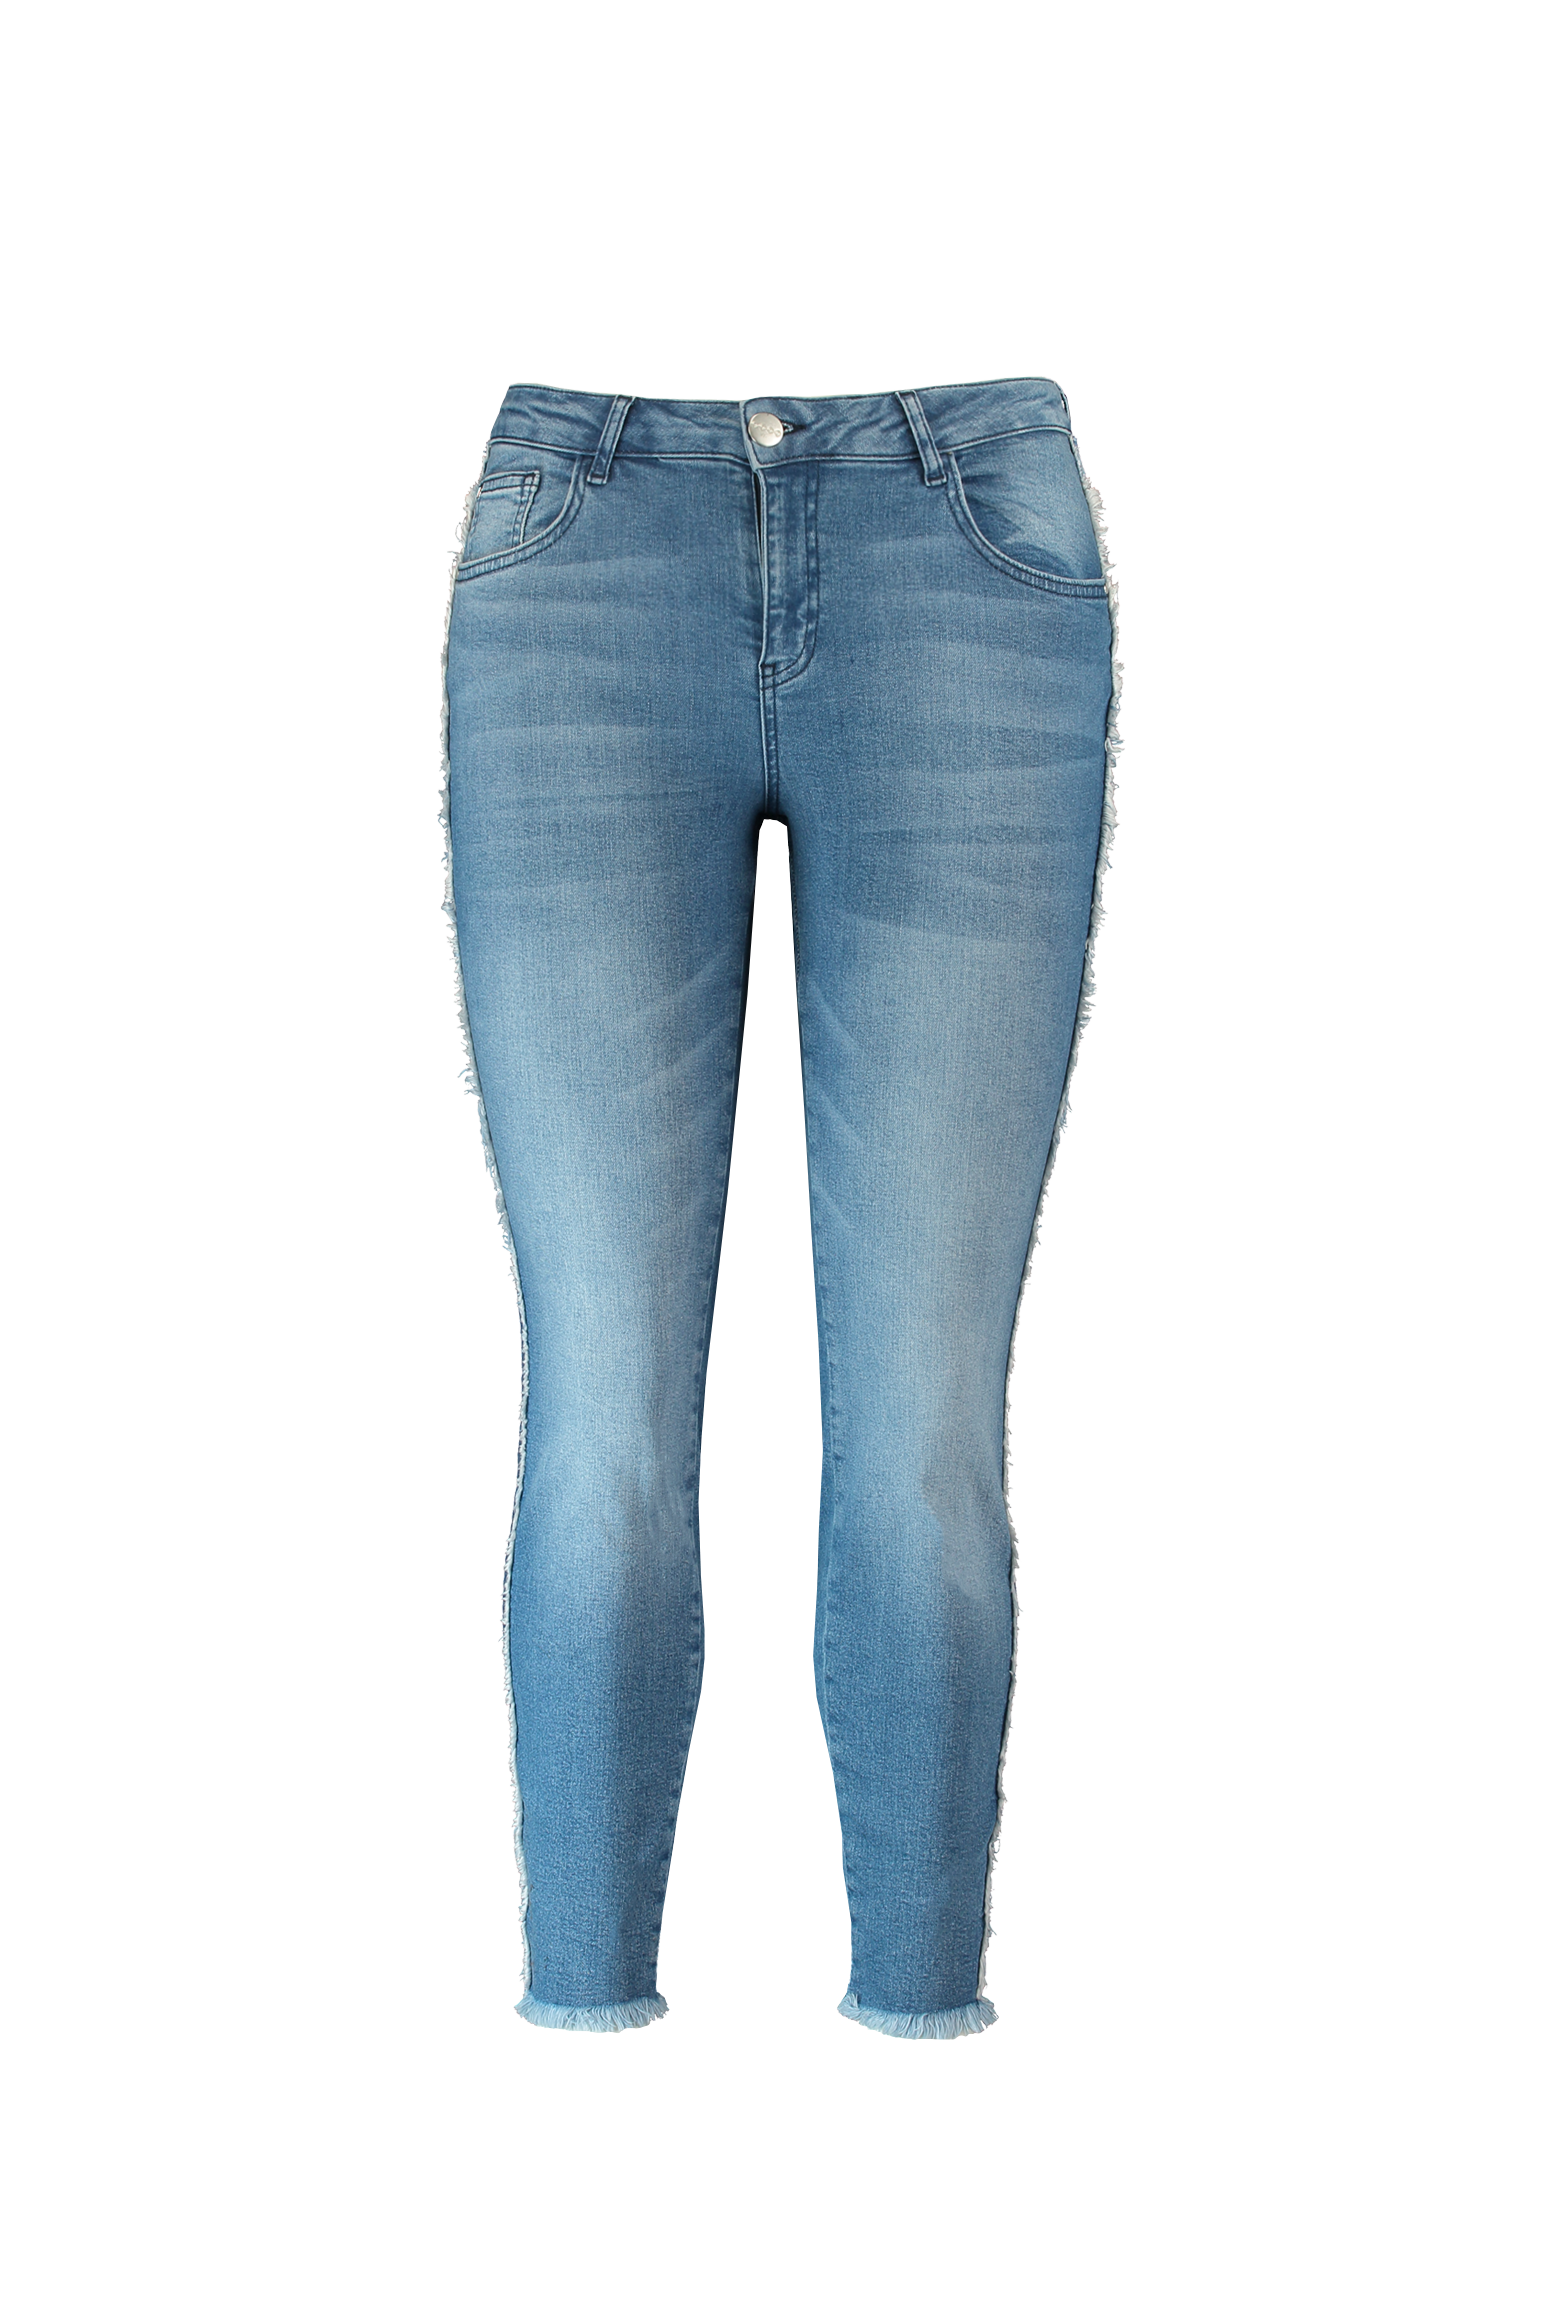 gracht Zuidoost weefgetouw Dames Jeans met rafels | MS Mode